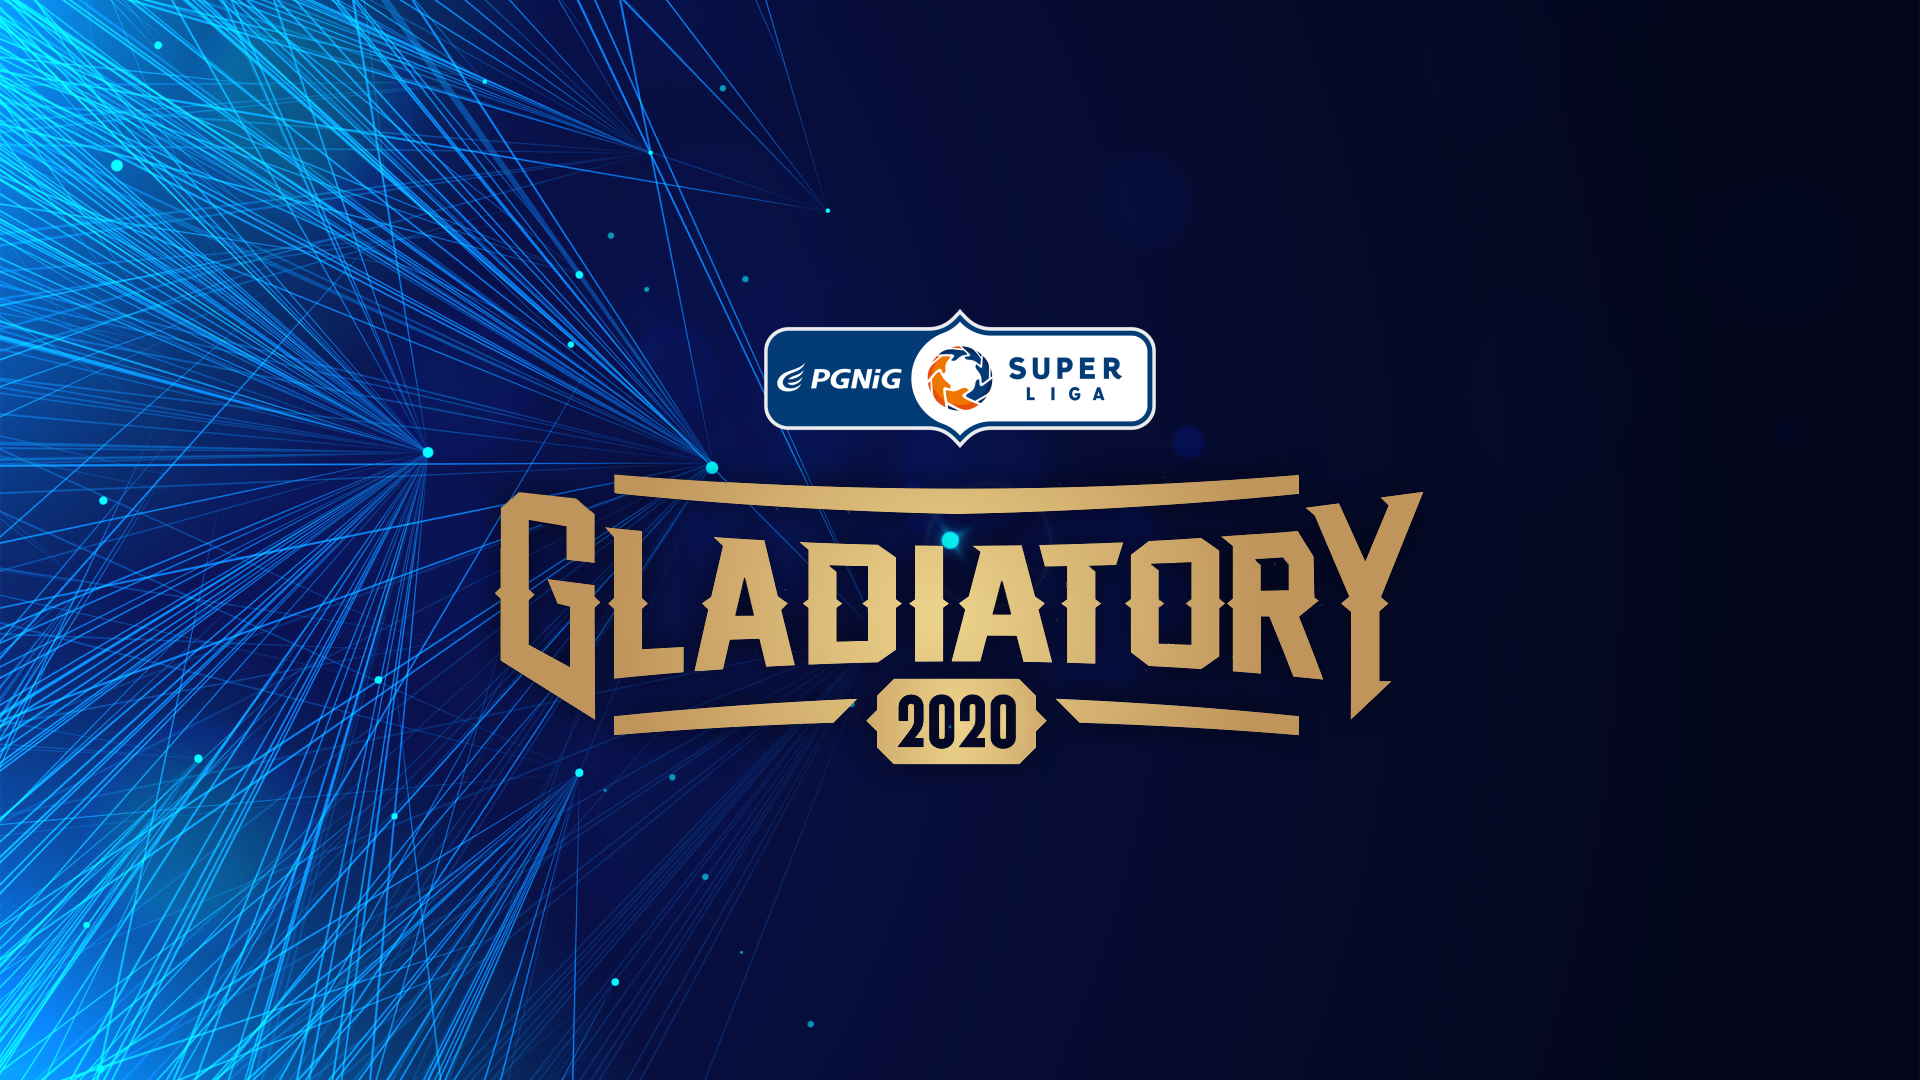 Gladiatory 2020